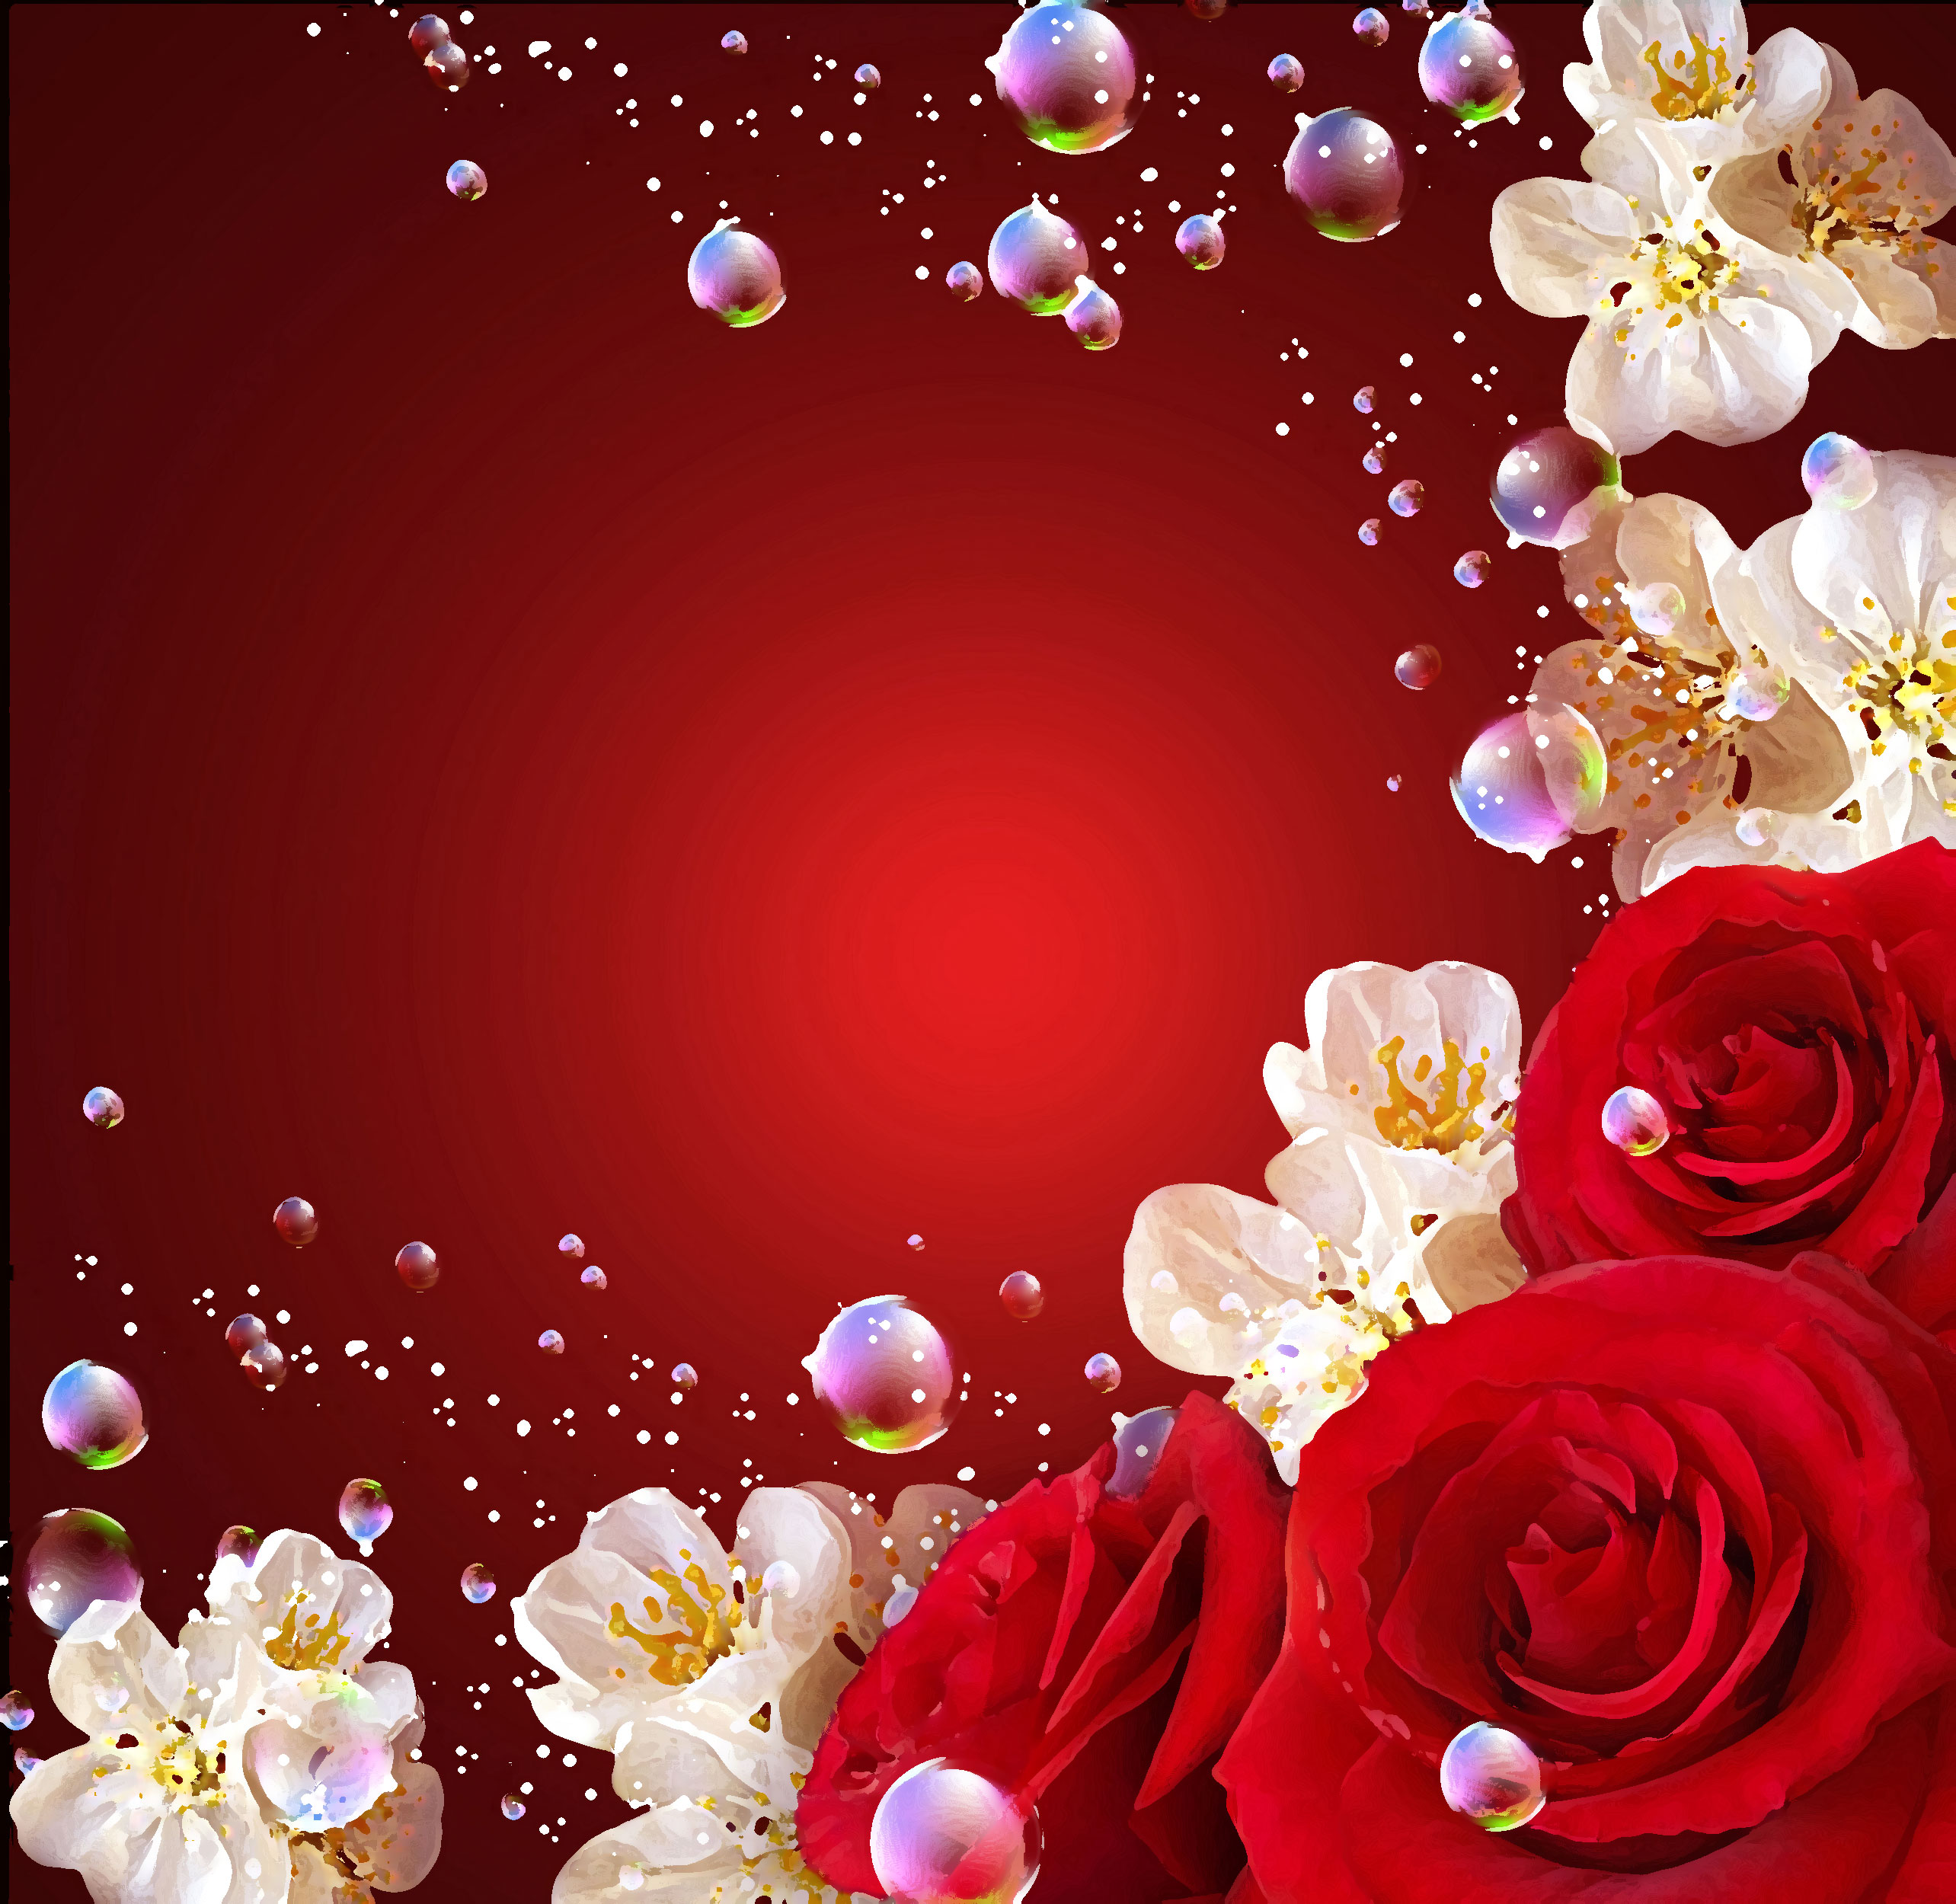 花のイラスト フリー素材 壁紙 背景no 691 赤バラ シャボン玉